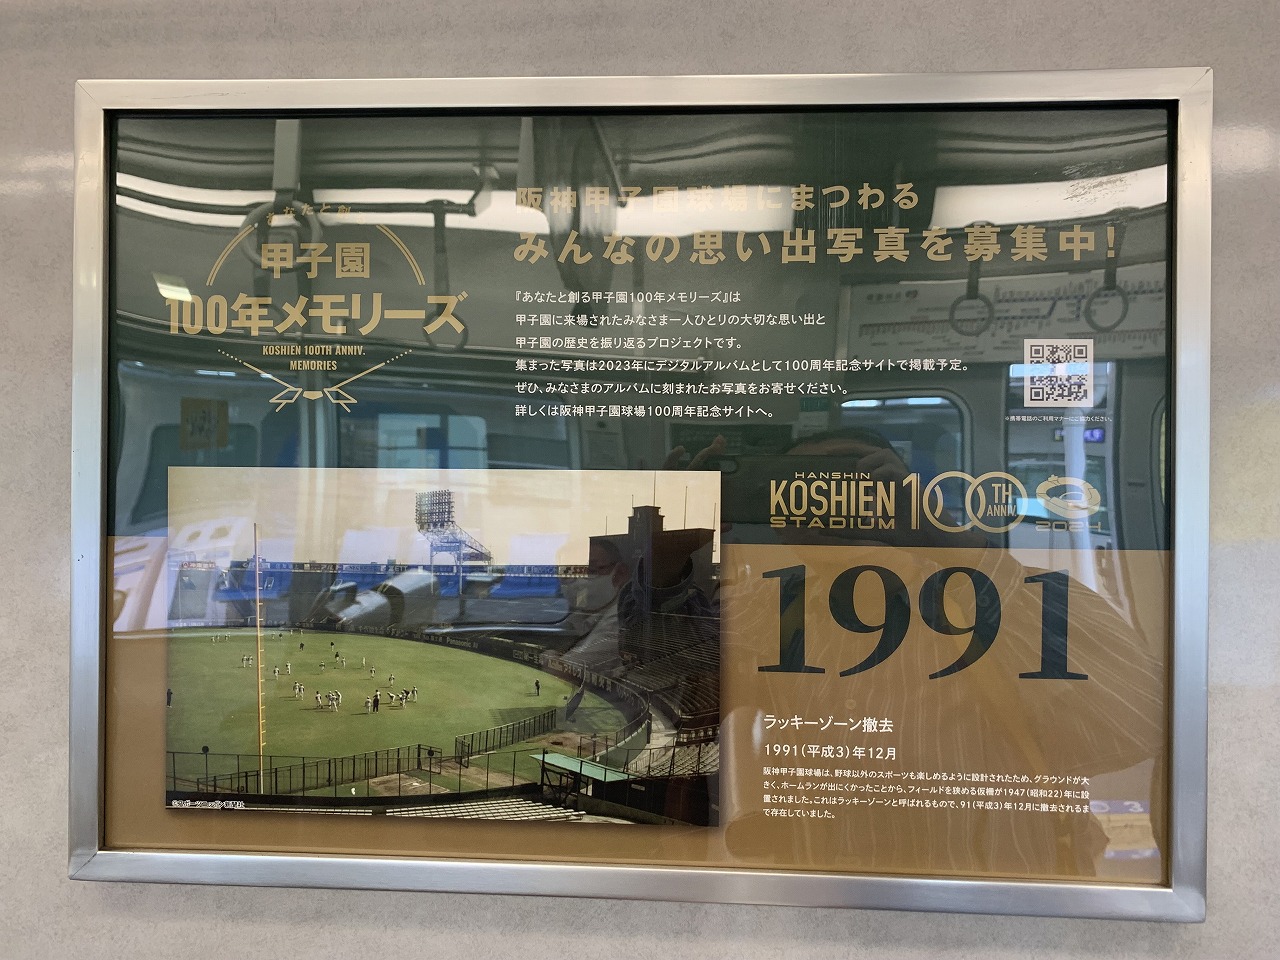 阪神甲子園球場100周年記念ラッピングトレイン